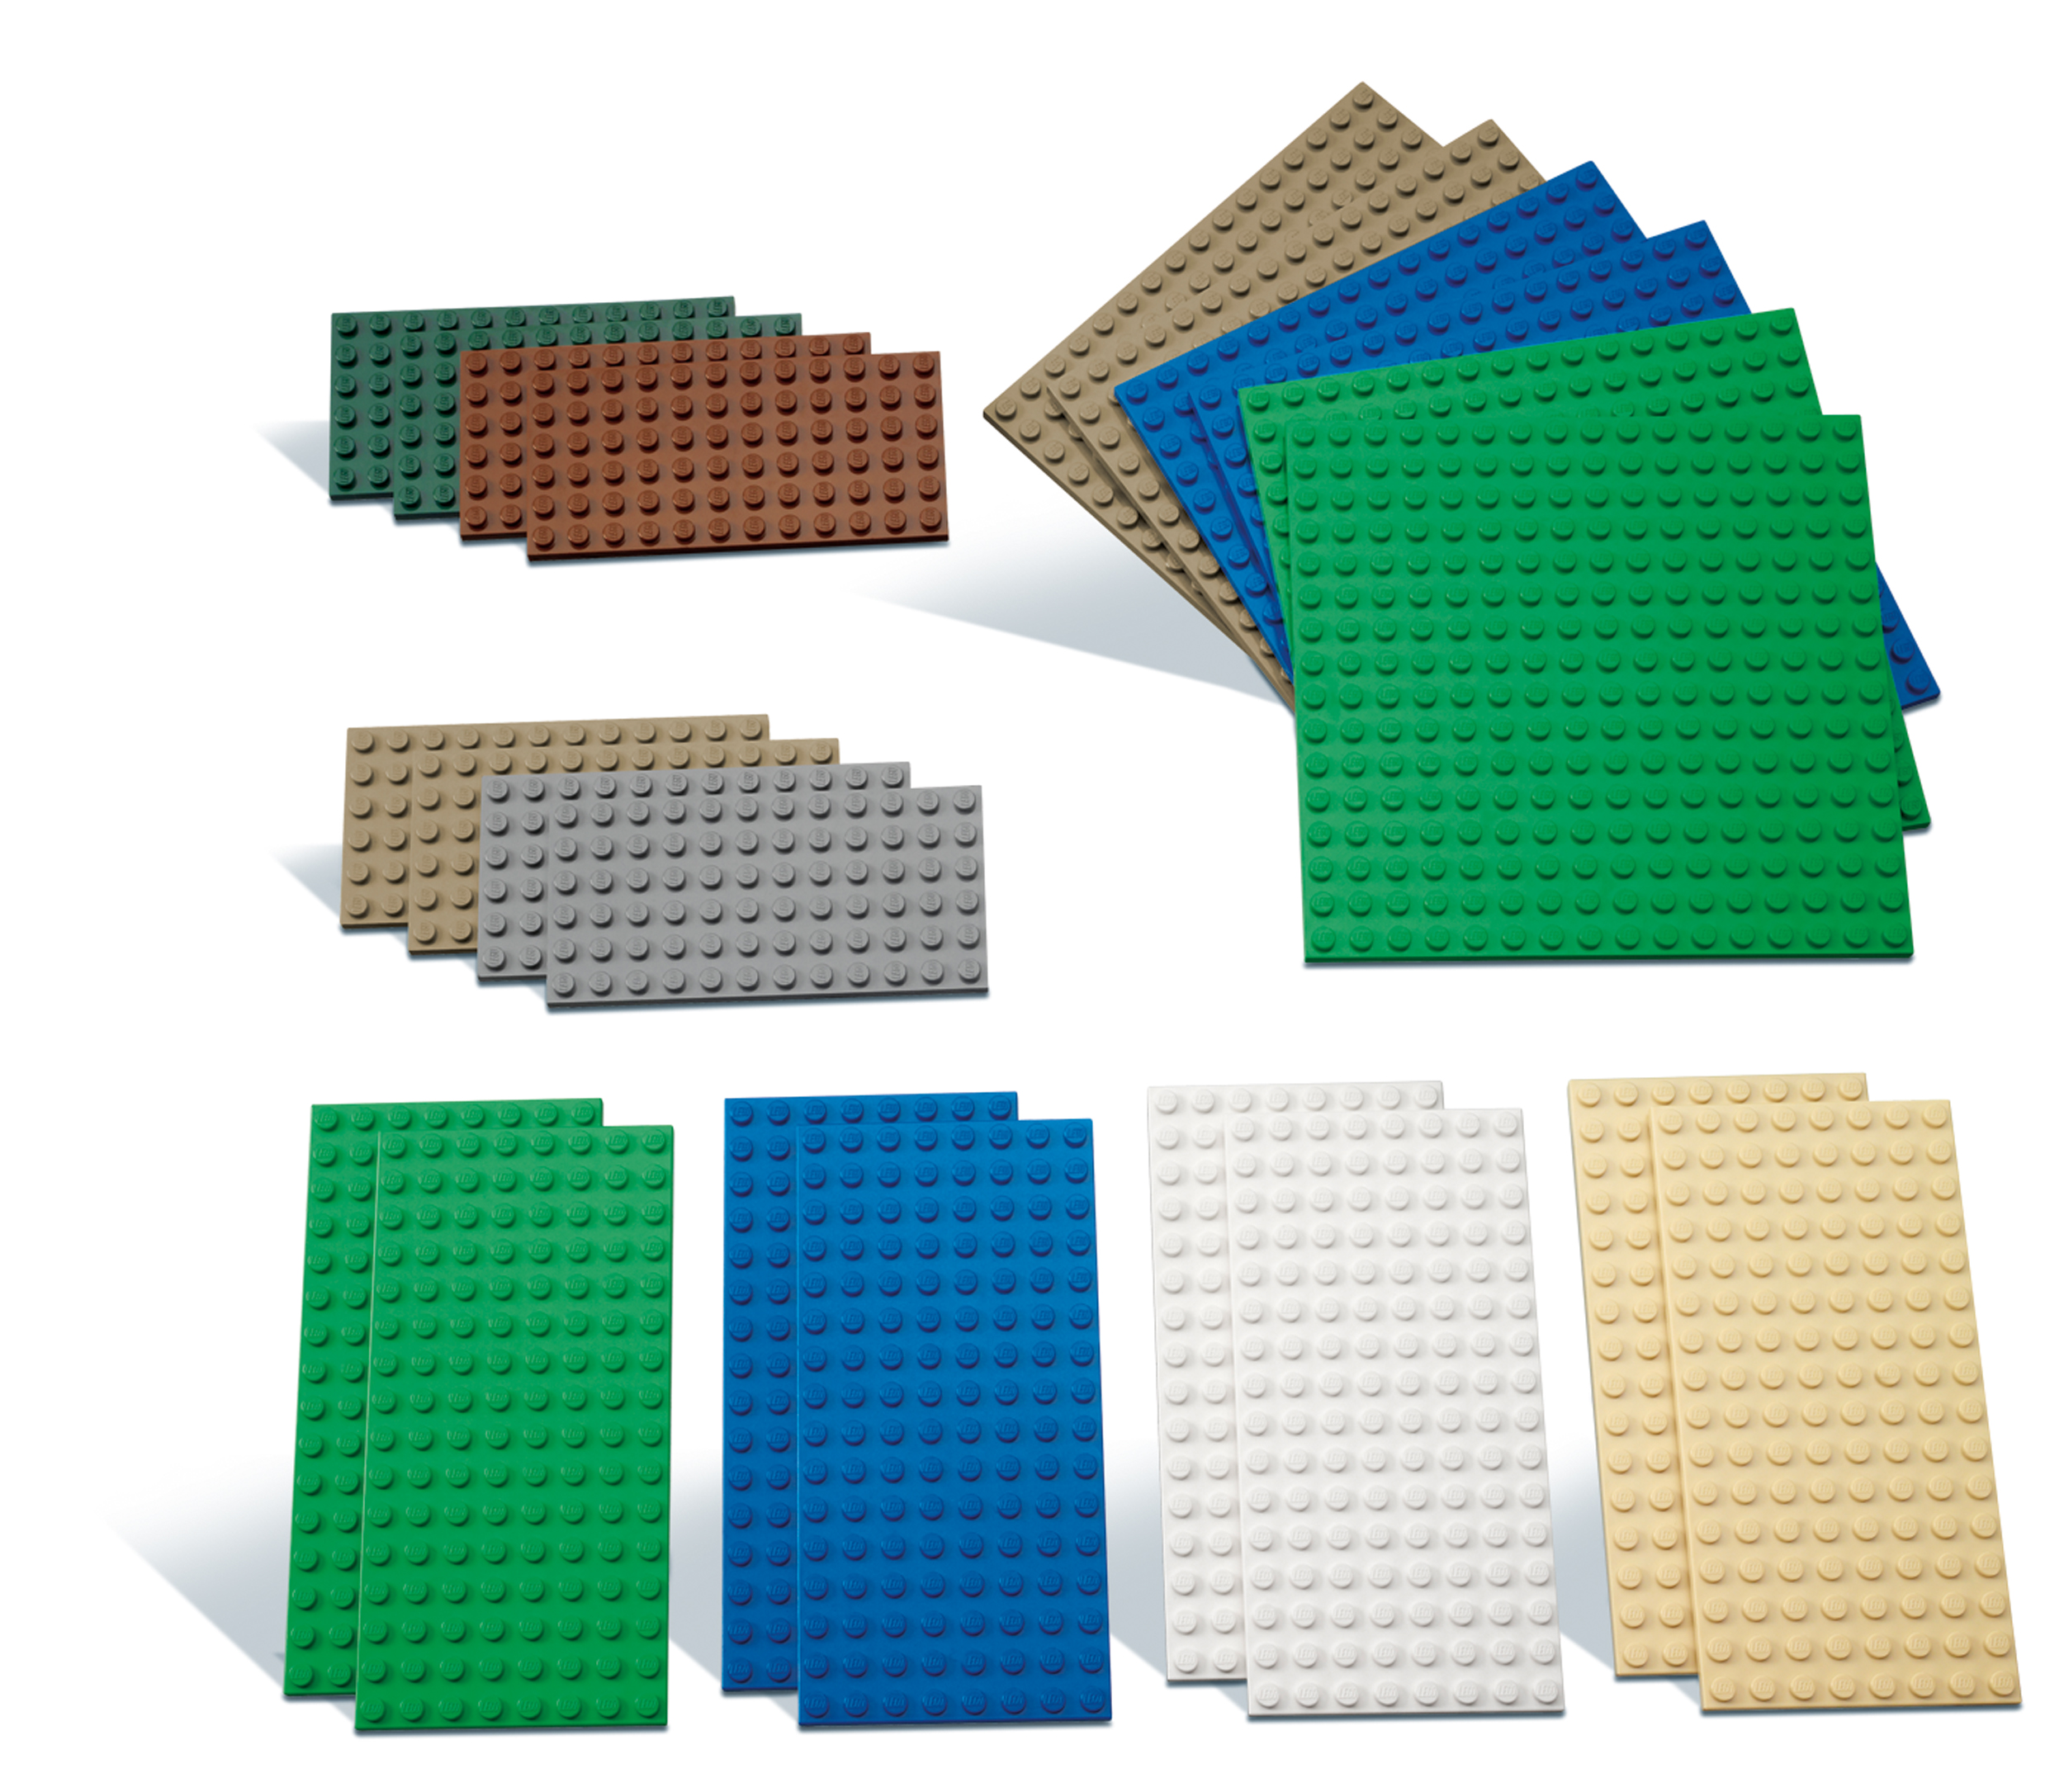 LEGO 30x Platten Bauplatten gemischt verschiedene Farben und Größen Bunt 